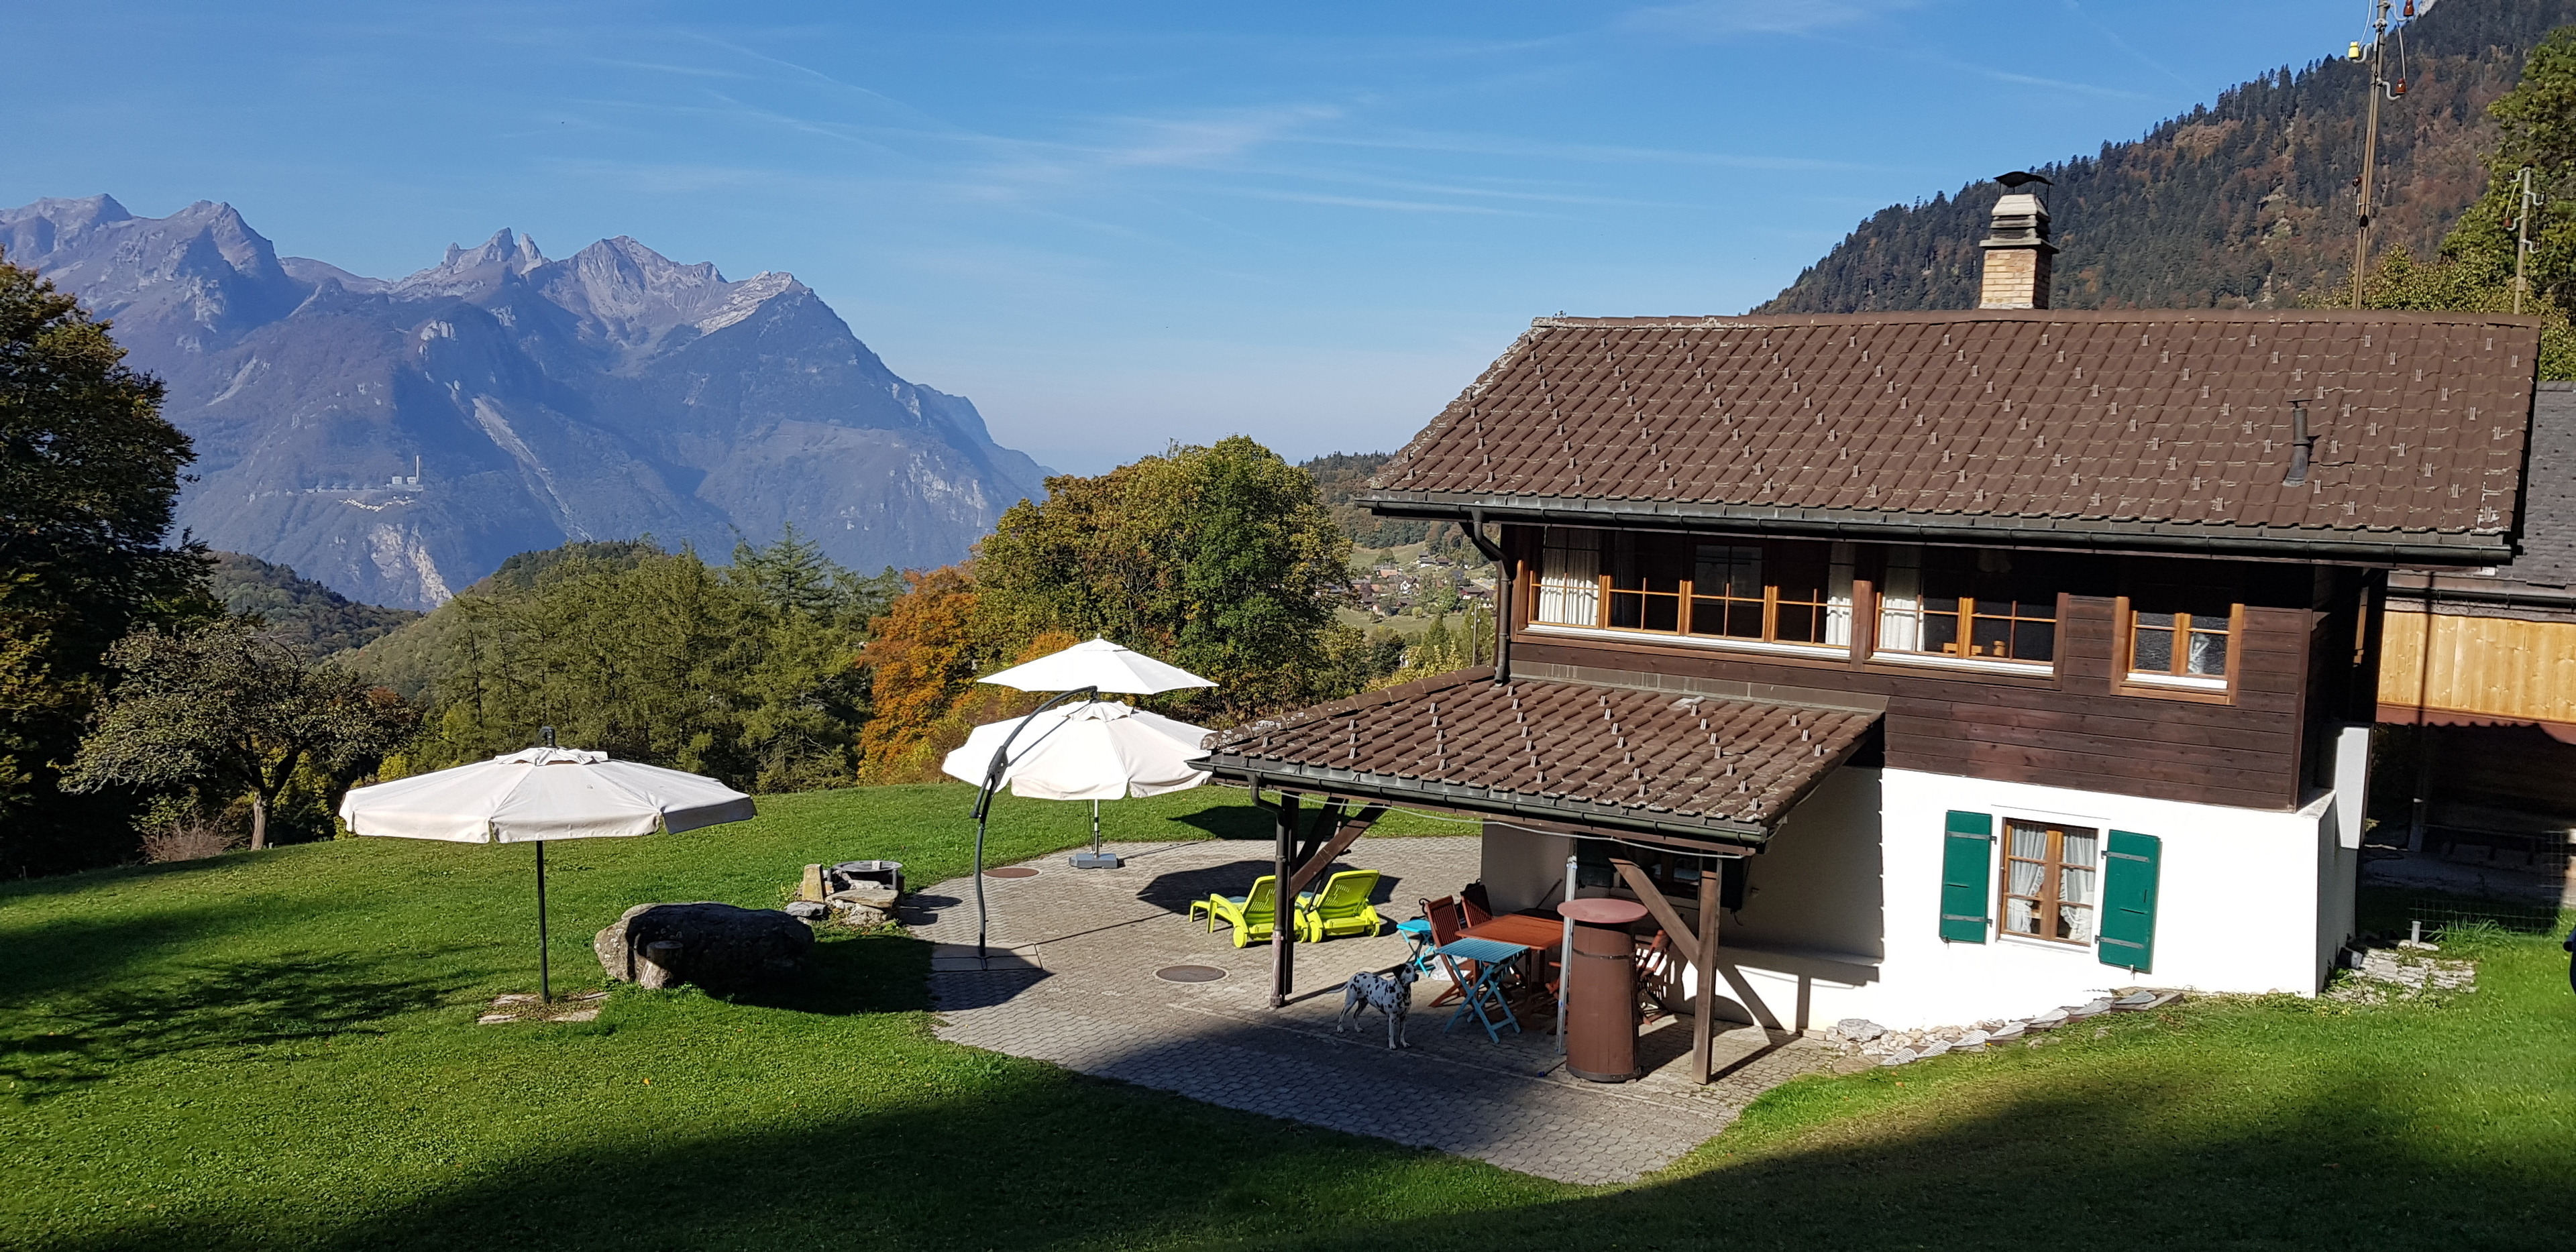 Chalet "Aisha-Les Chevreuils" Ferienhaus in der Schweiz